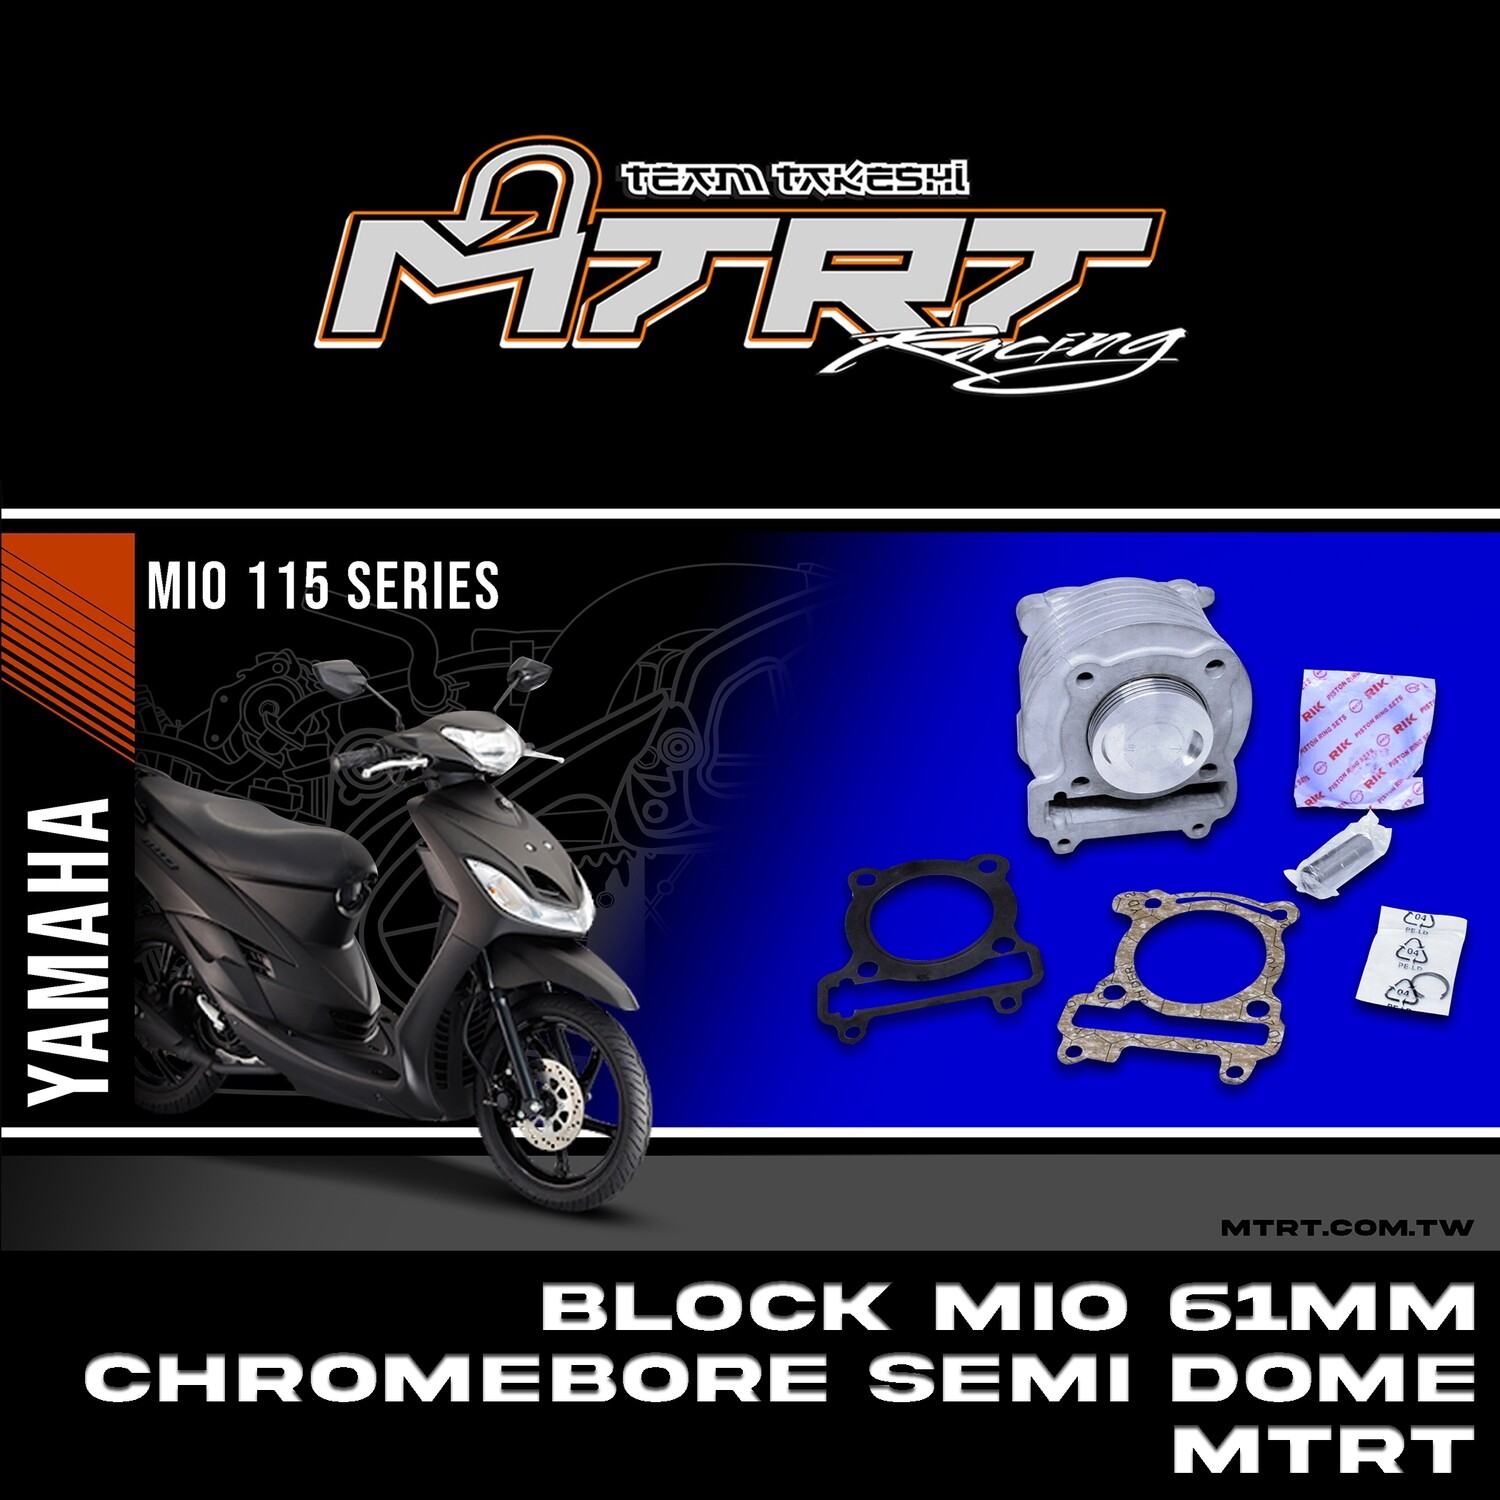 BLOCK MIO 61mm Chromebone Semi-Dome piston MTRT